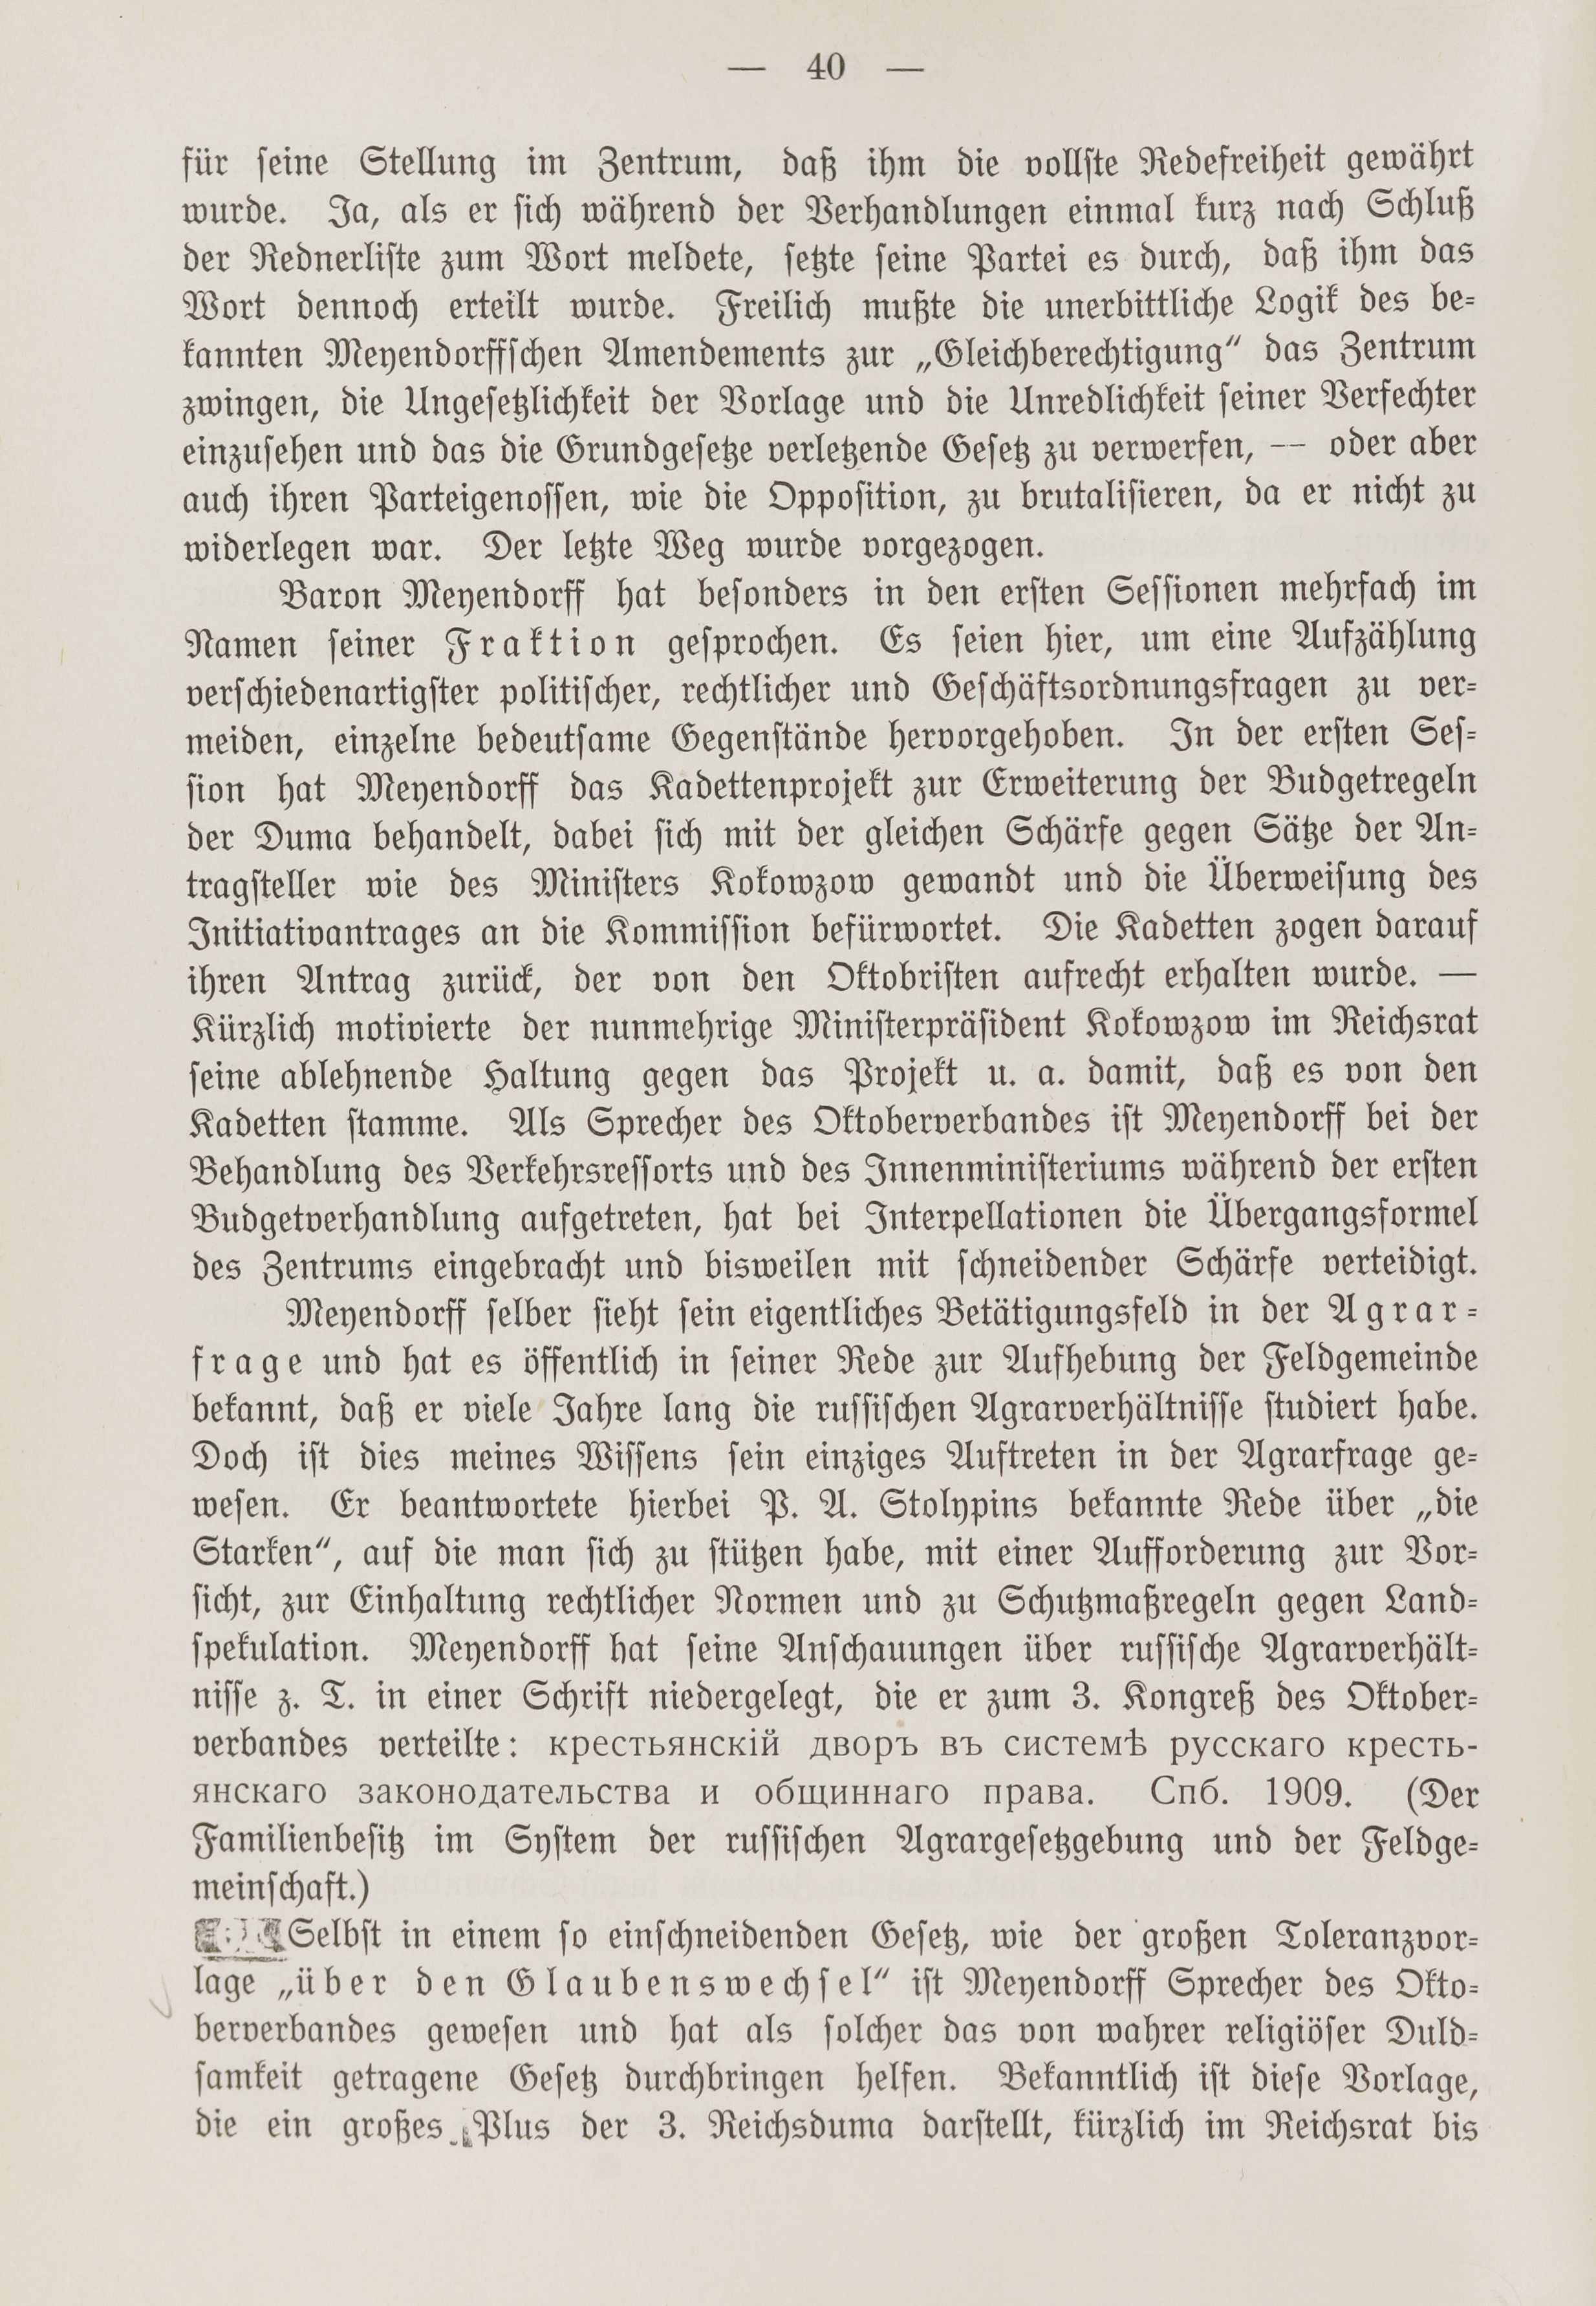 Deutsche Monatsschrift für Russland [1] (1912) | 47. (40) Основной текст